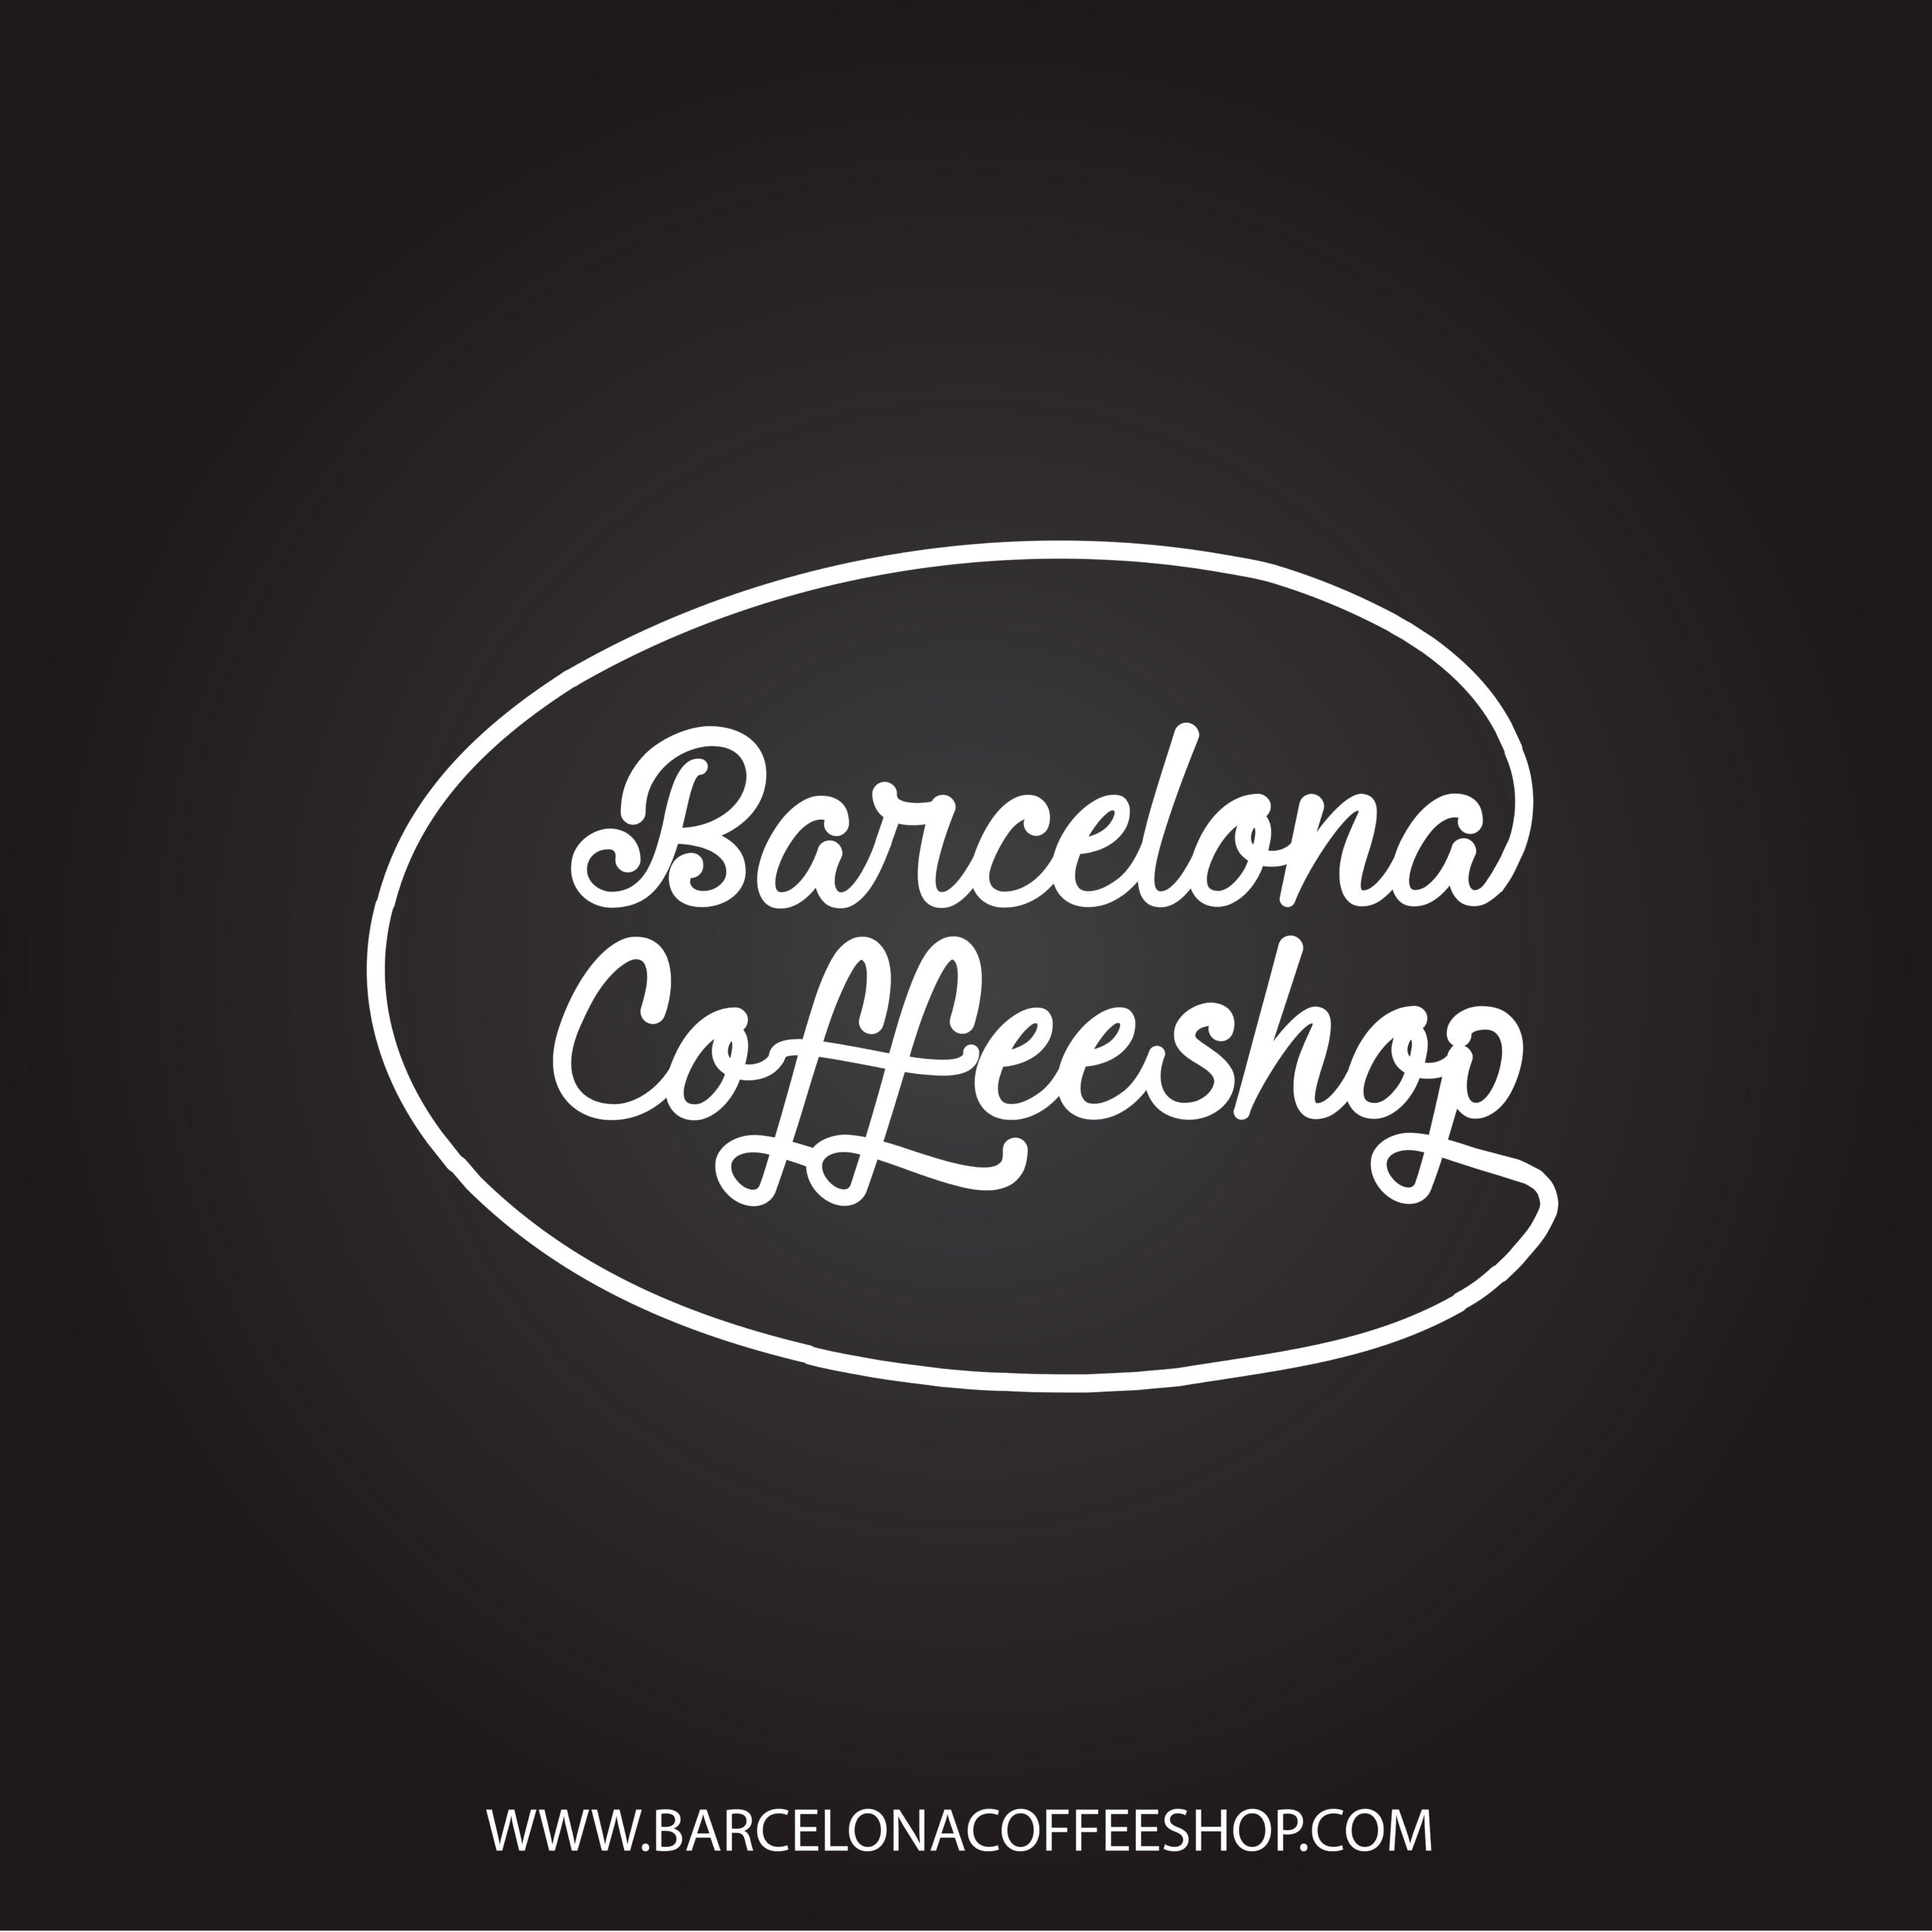 Barcelona Coffeshop